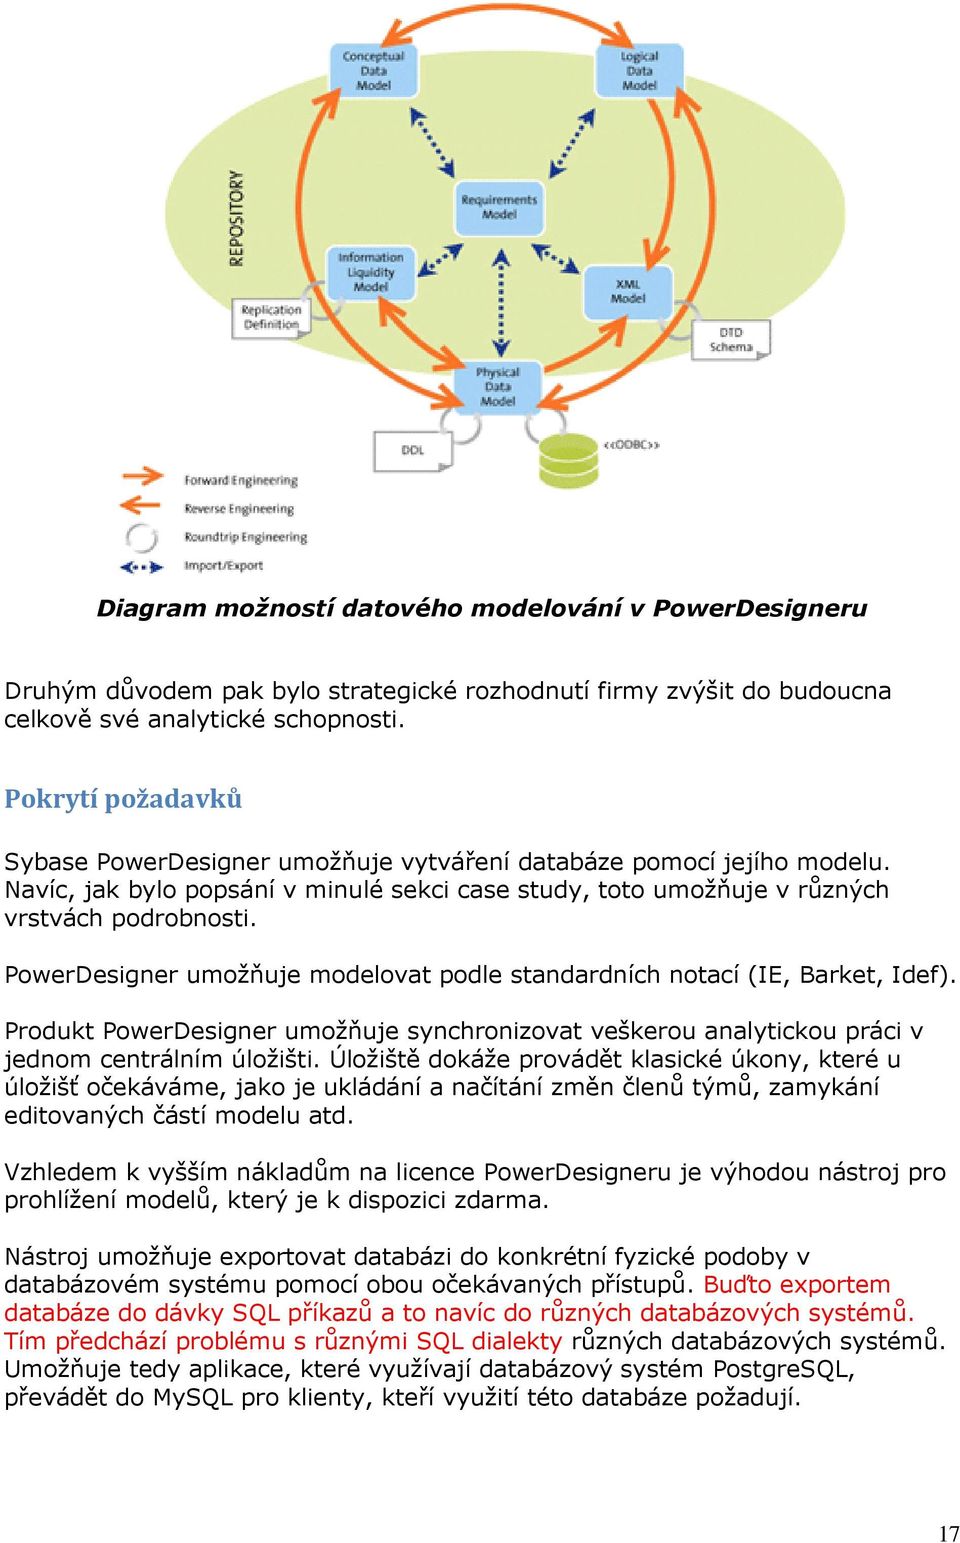 PowerDesigner umožňuje modelovat podle standardních notací (IE, Barket, Idef). Produkt PowerDesigner umožňuje synchronizovat veškerou analytickou práci v jednom centrálním úložišti.